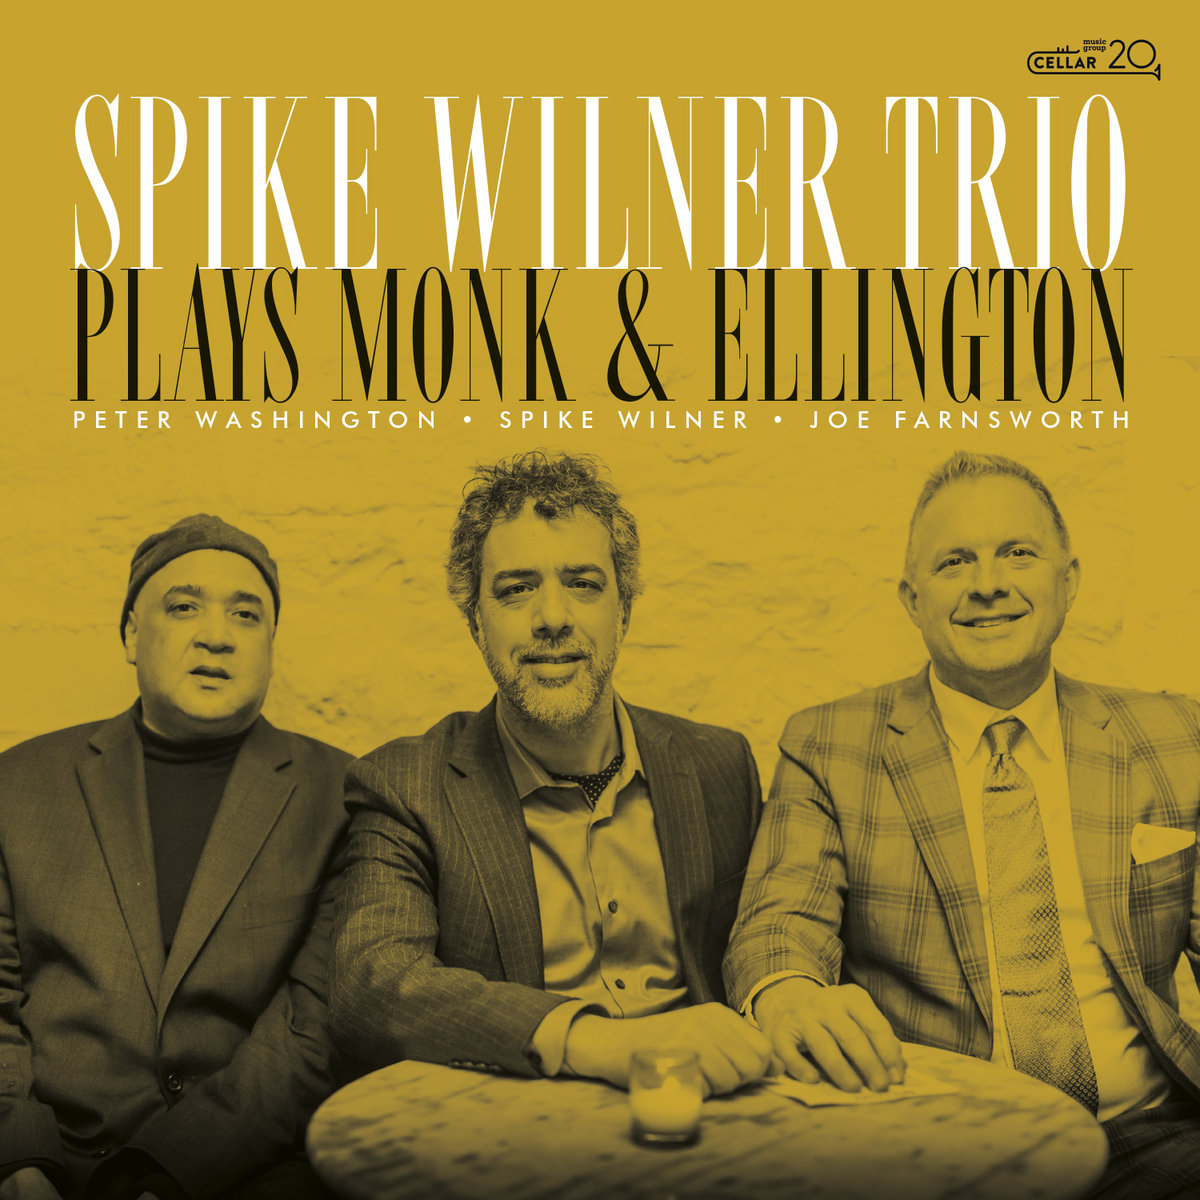 11th Nov 2022 new albums Spike Wilner Trio